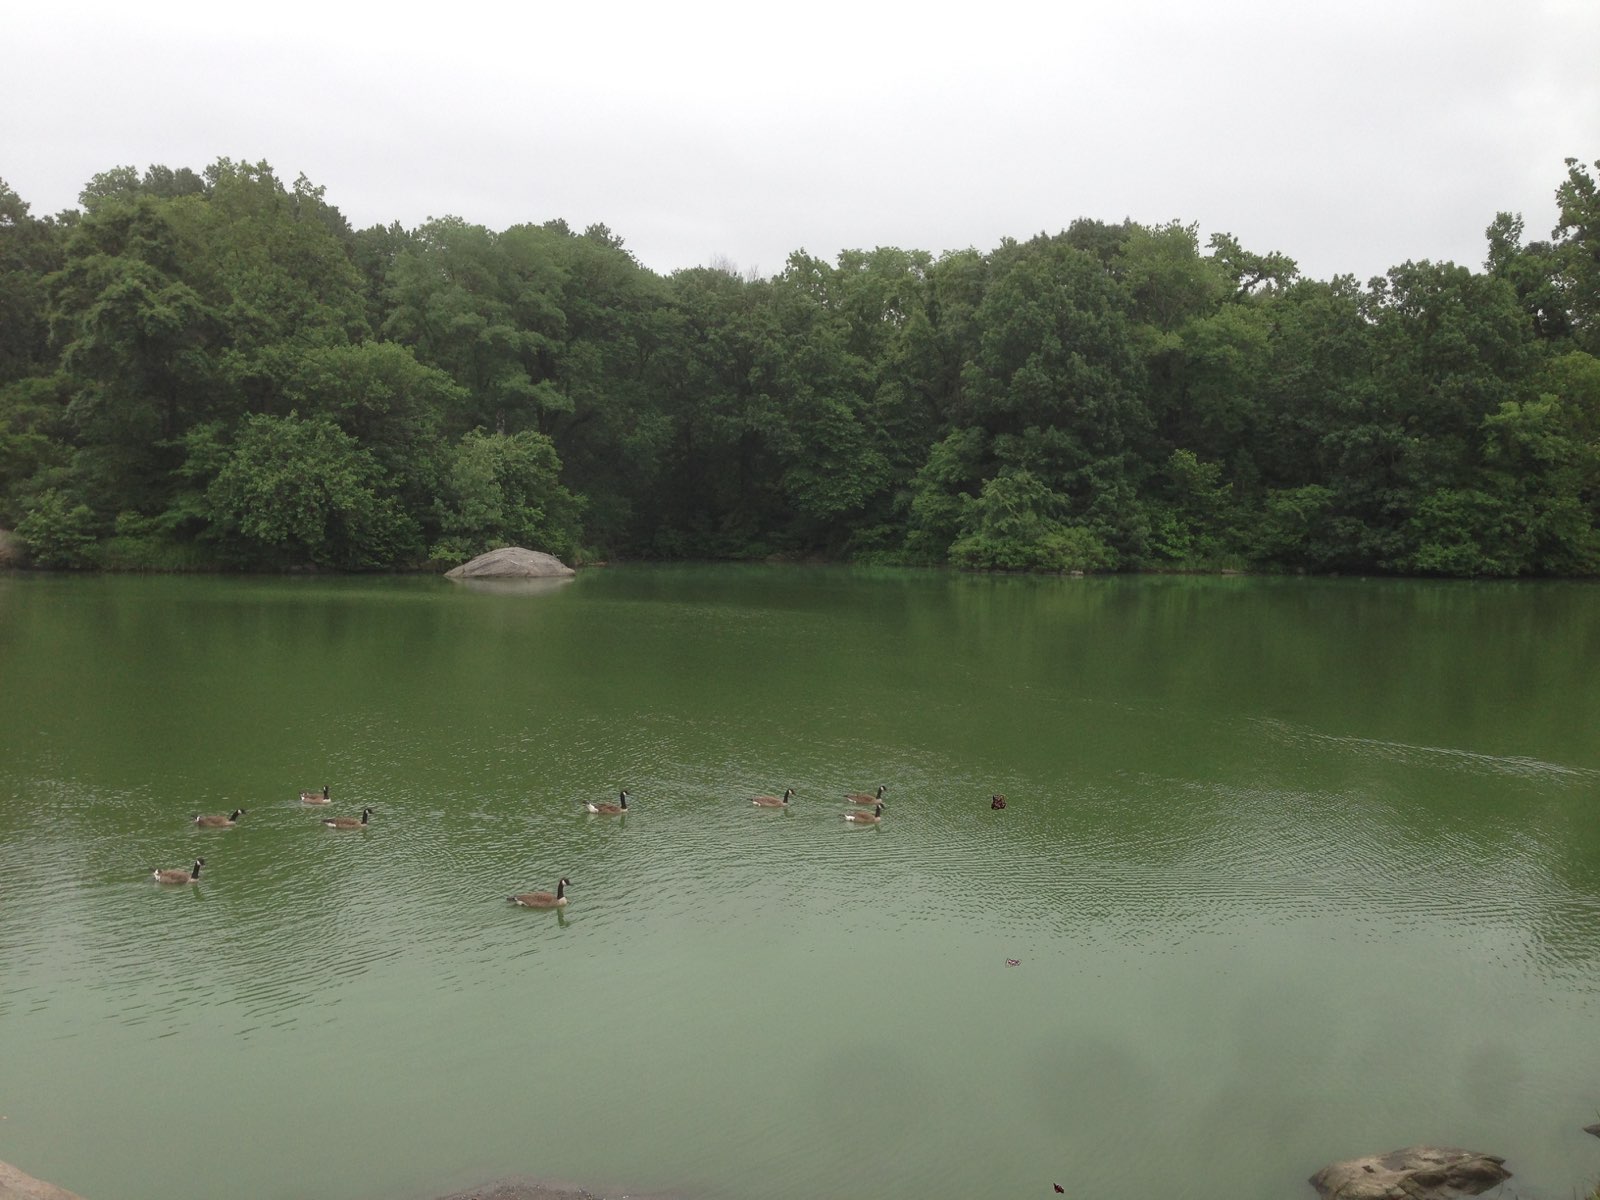 Ducks floating